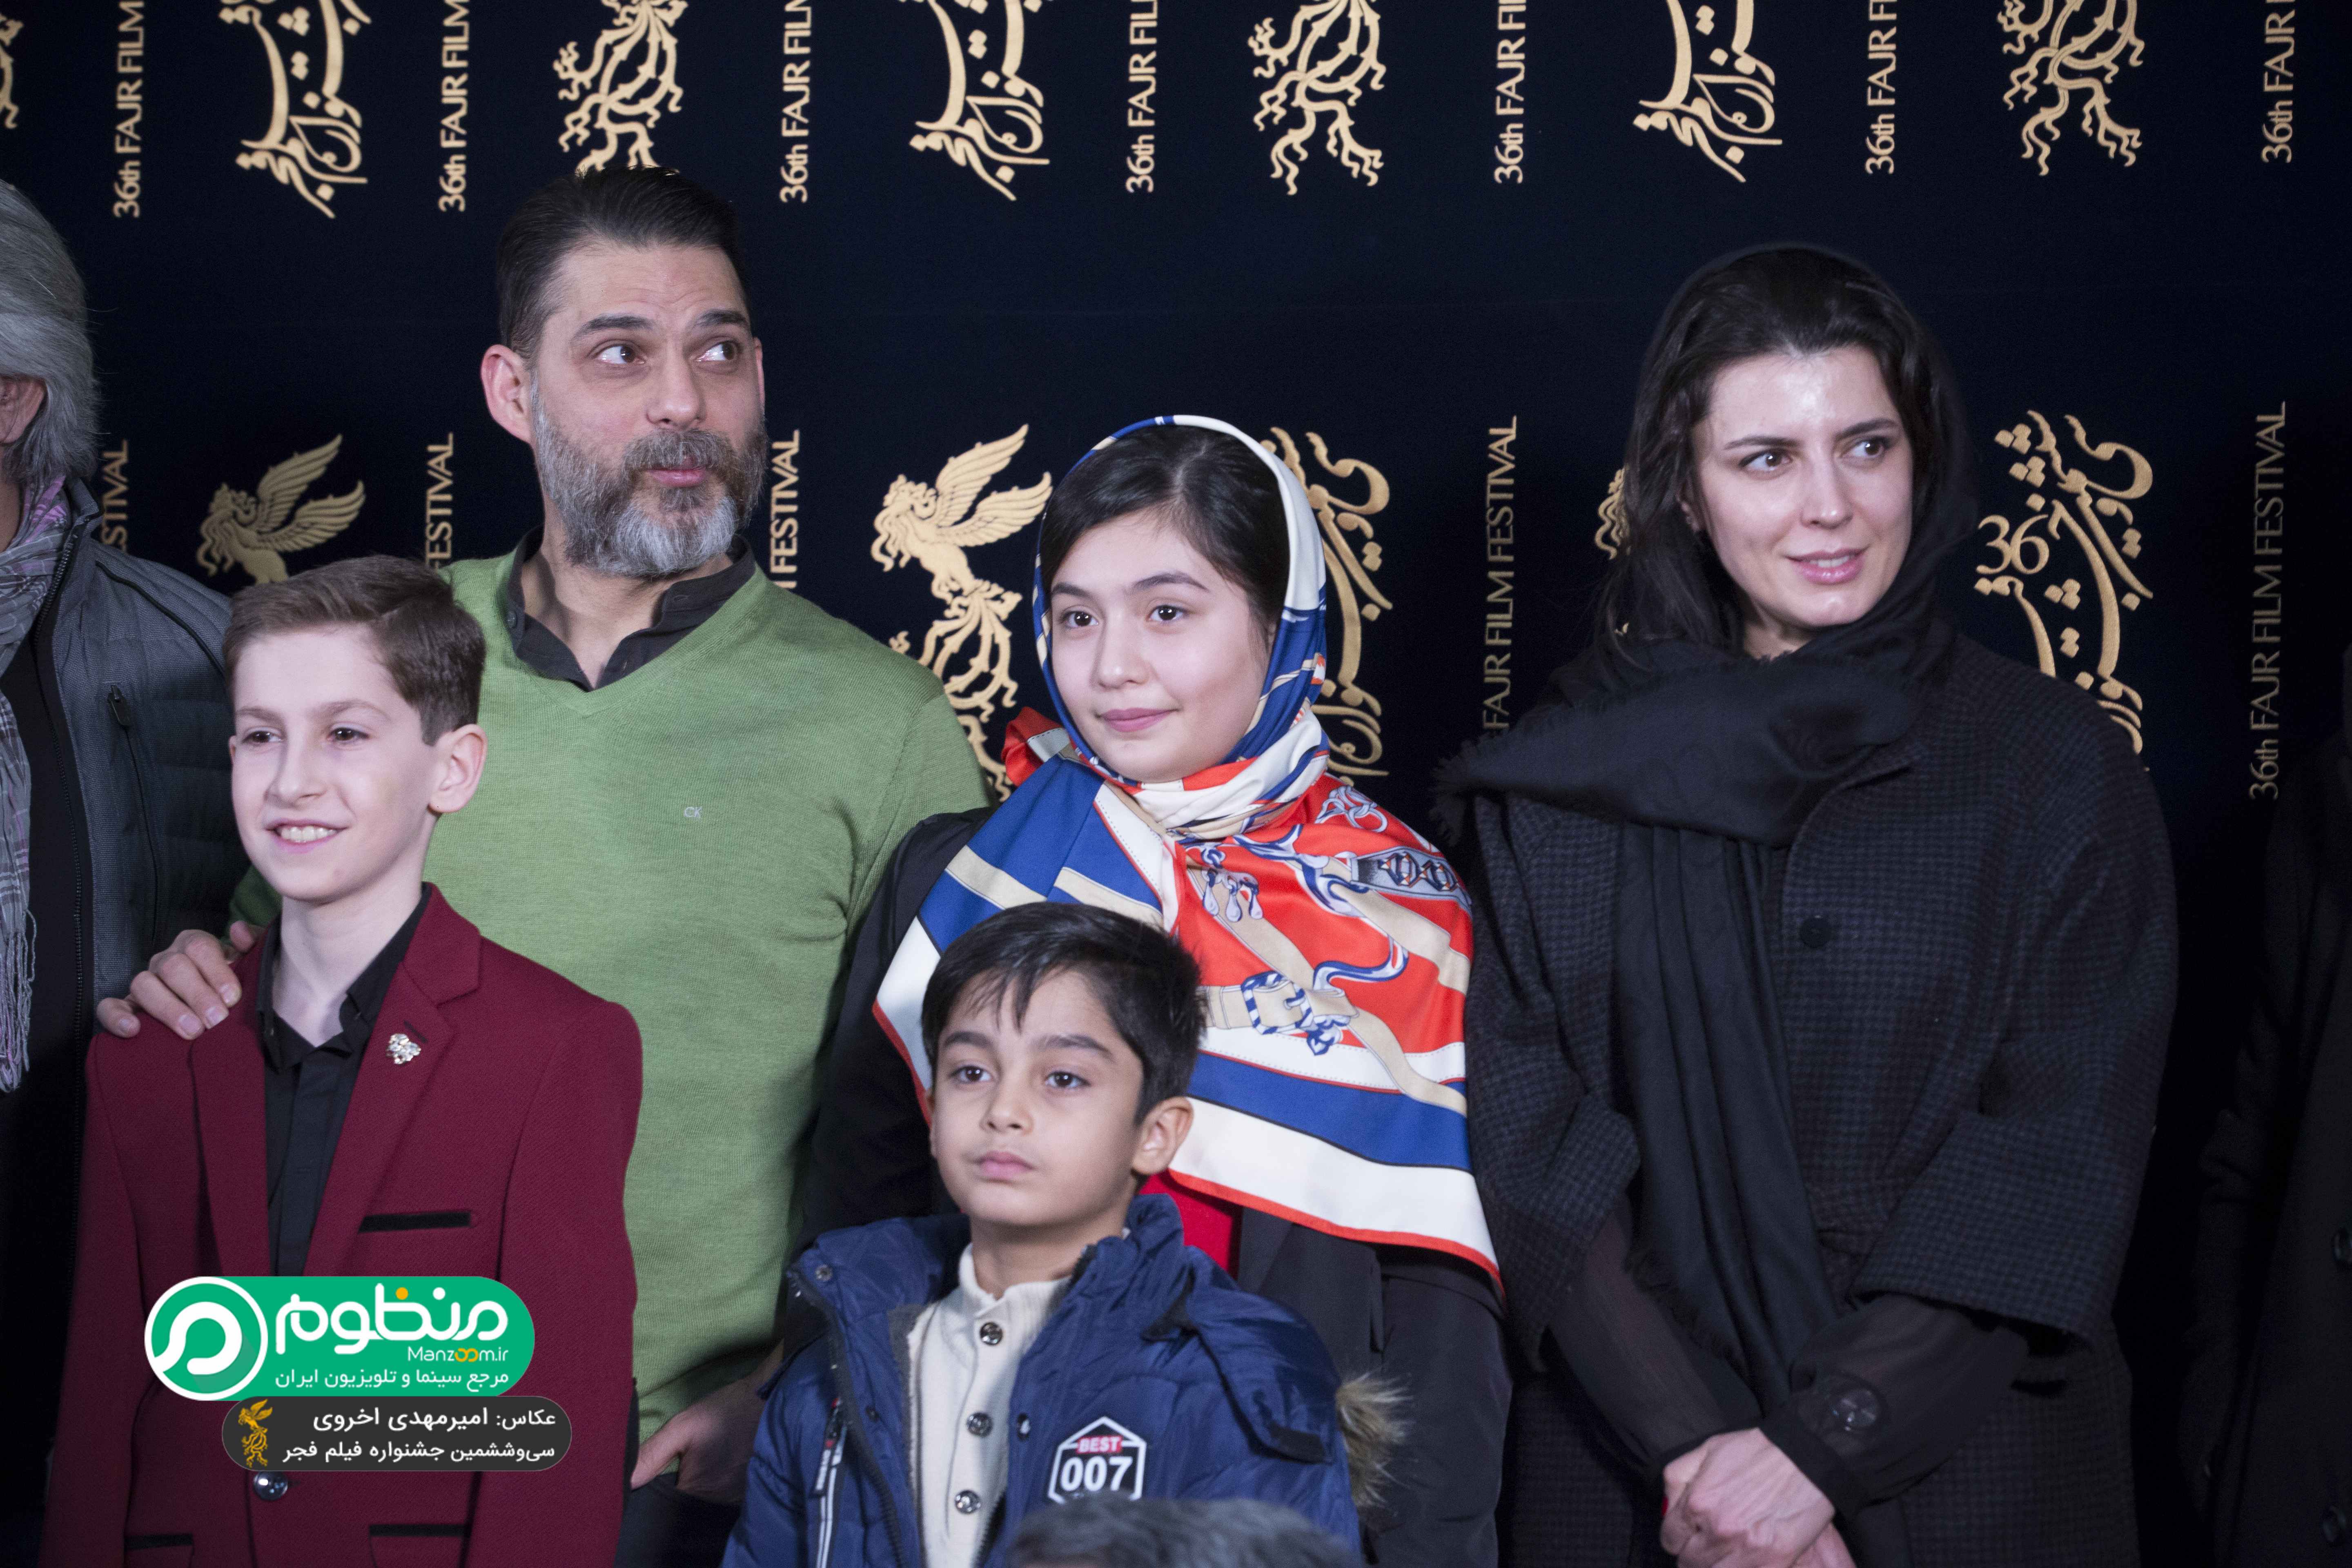 لیلا حاتمی در جشنواره فیلم سینمایی بمب؛ یک عاشقانه به همراه ارشیا عبداللهی، پیمان معادی و باران معادی